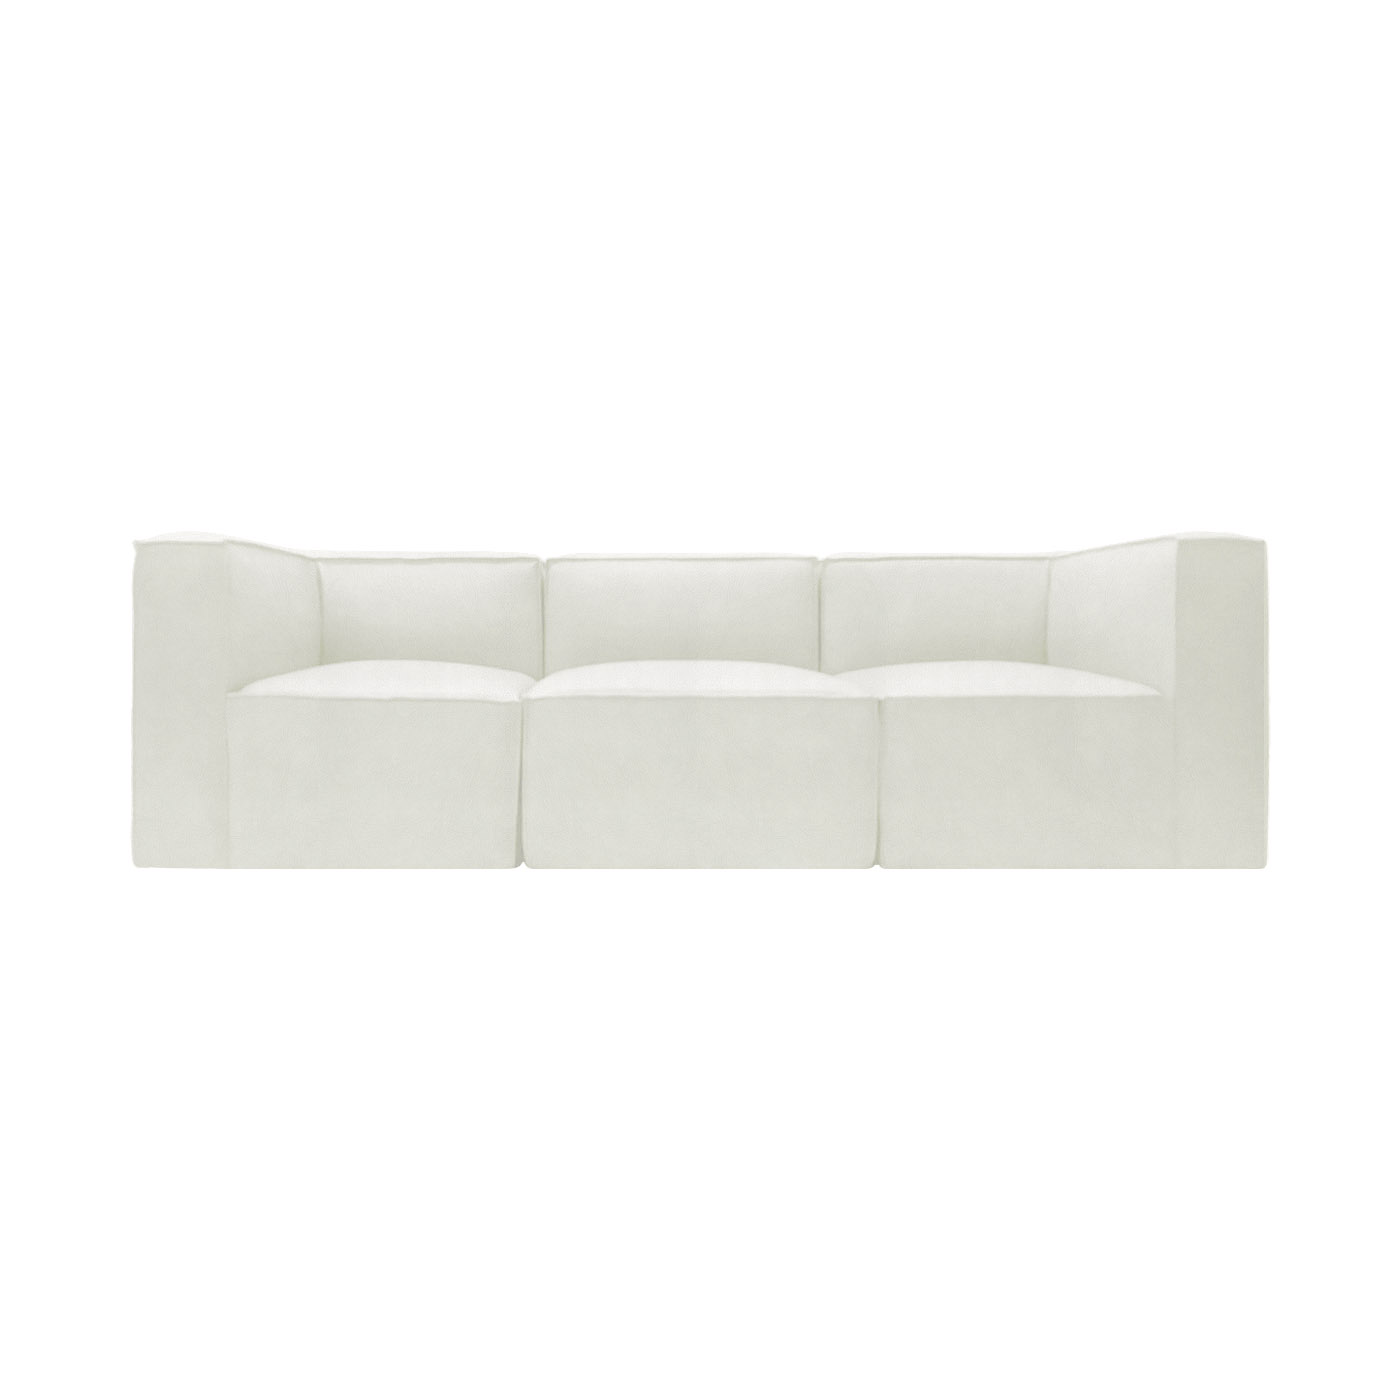 Malmo Faux Leather Sofa & Chaise